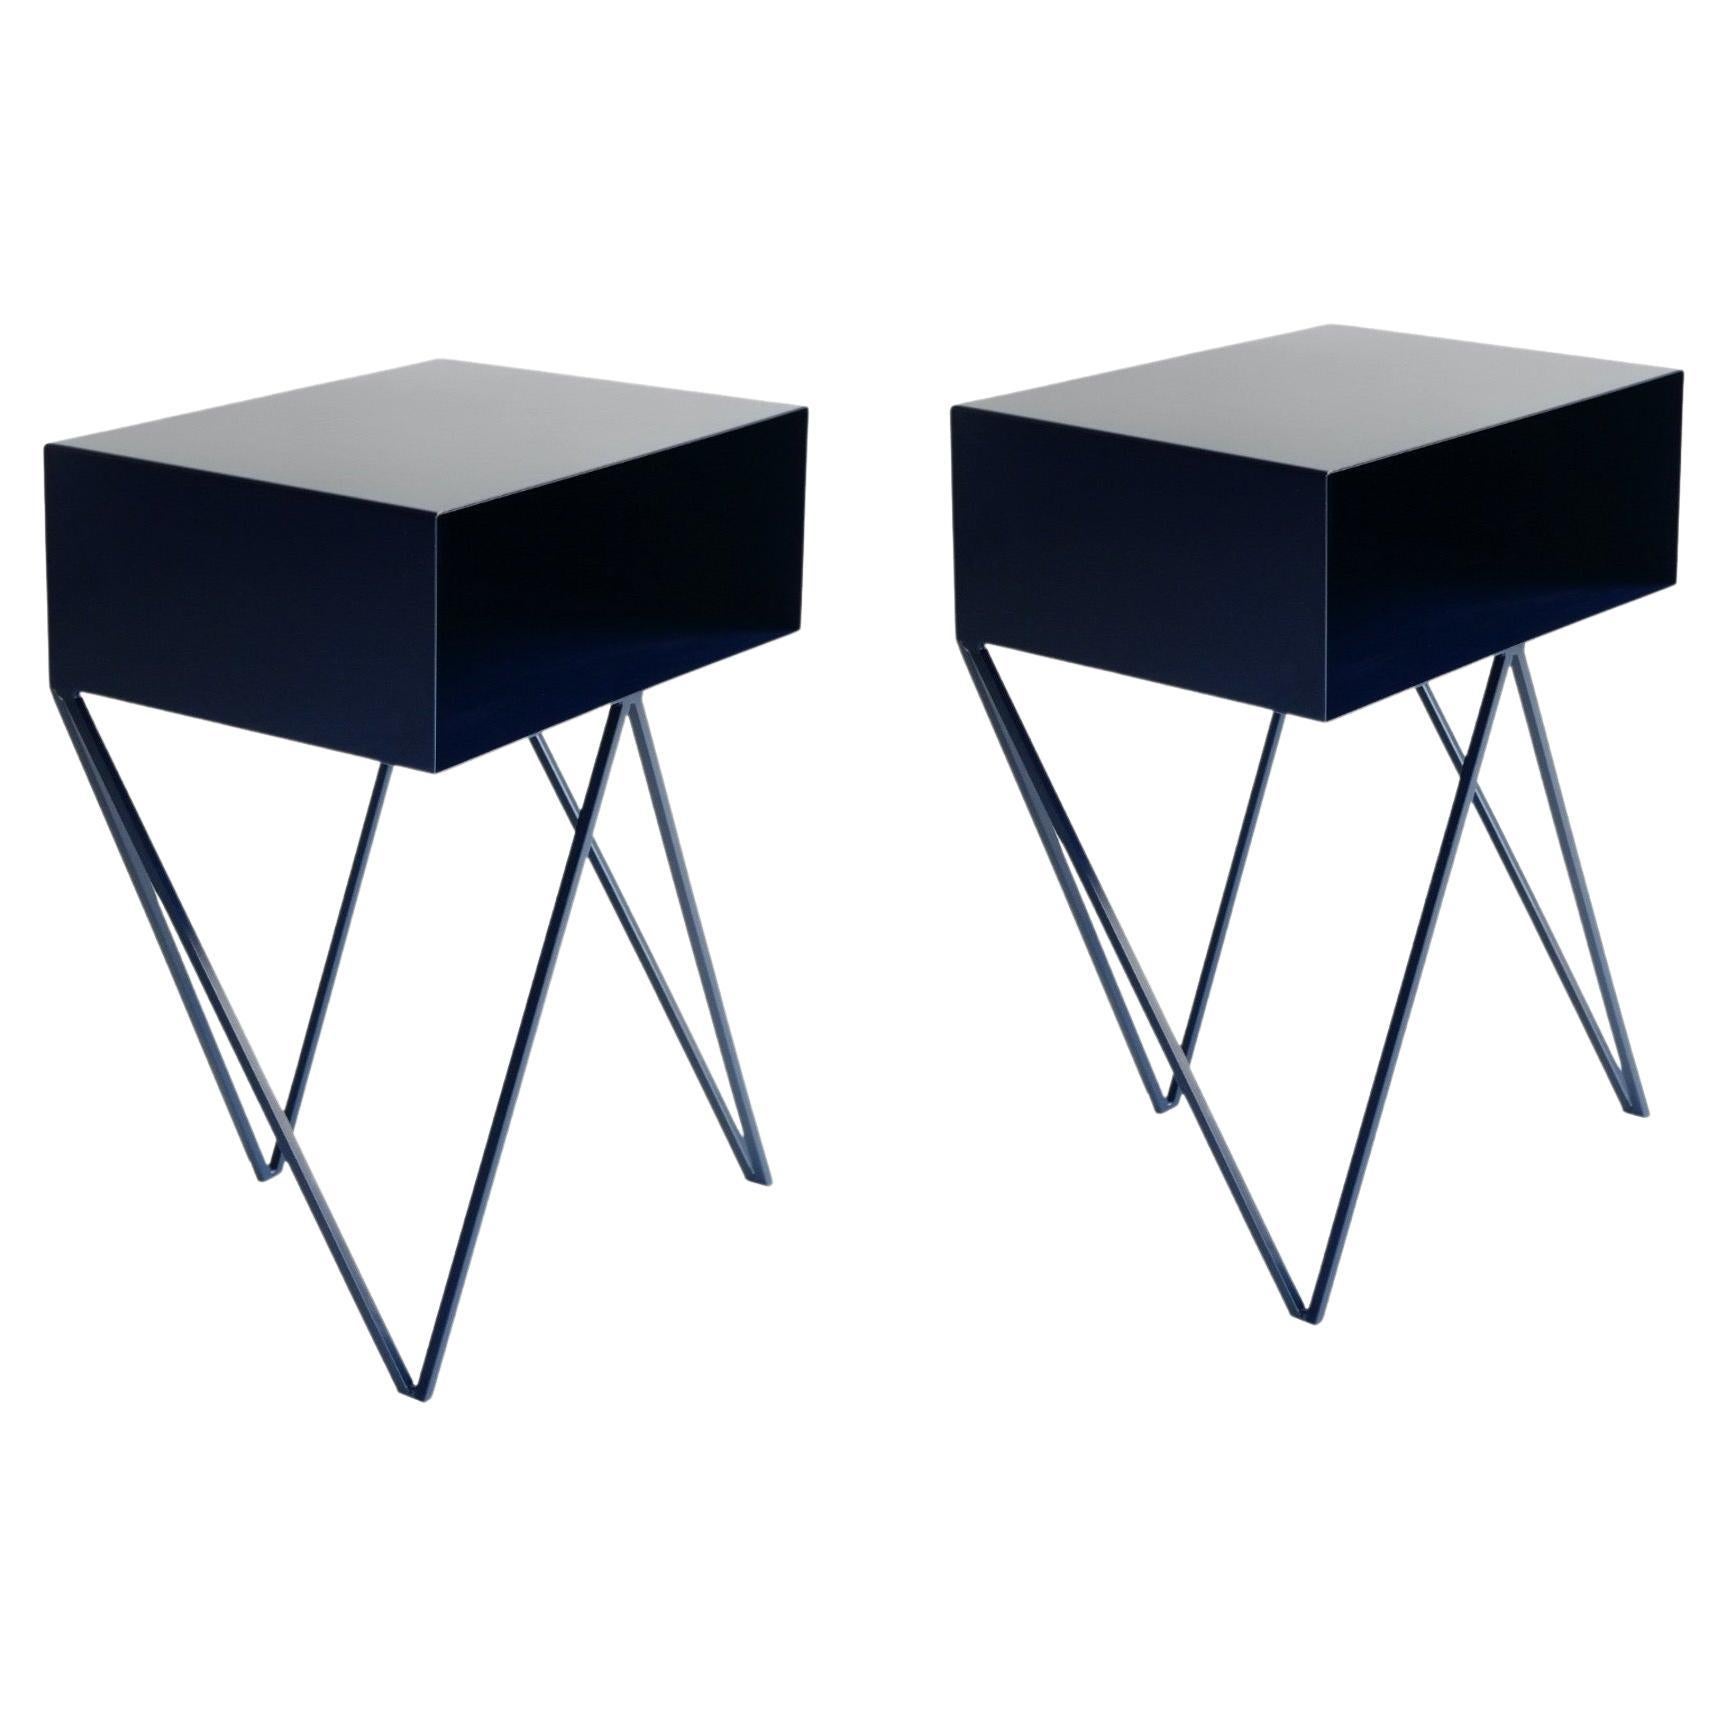 Pair of Dark Blue Steel Robot Bedside Tables - Nightstands